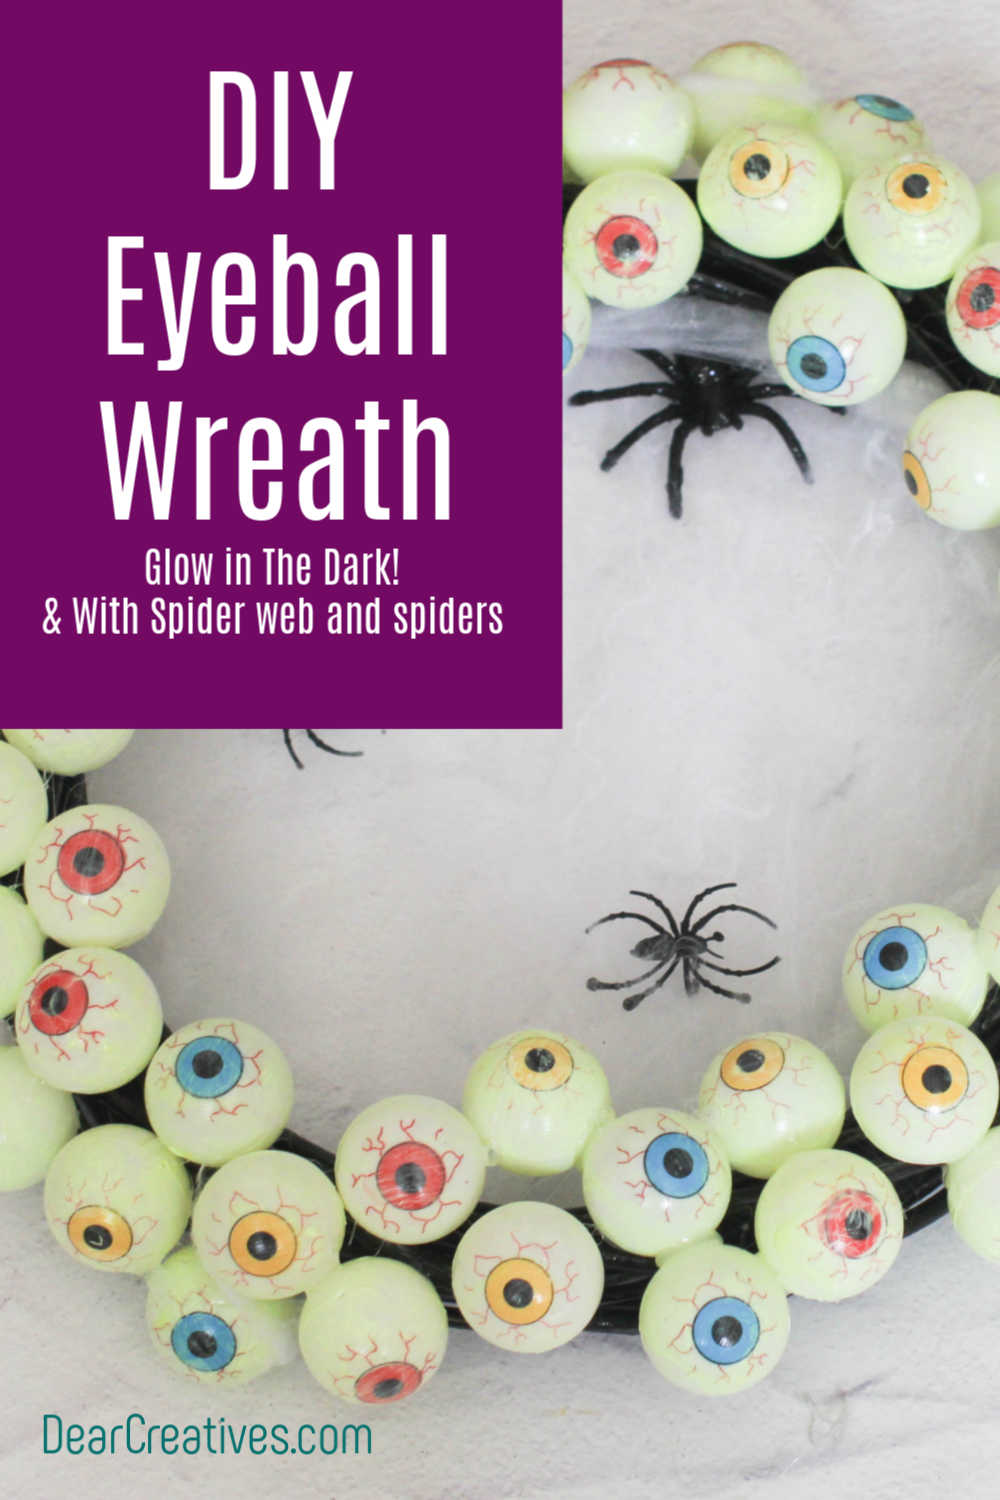 DIY Eyeball Wreath – Easy To Make And Hang